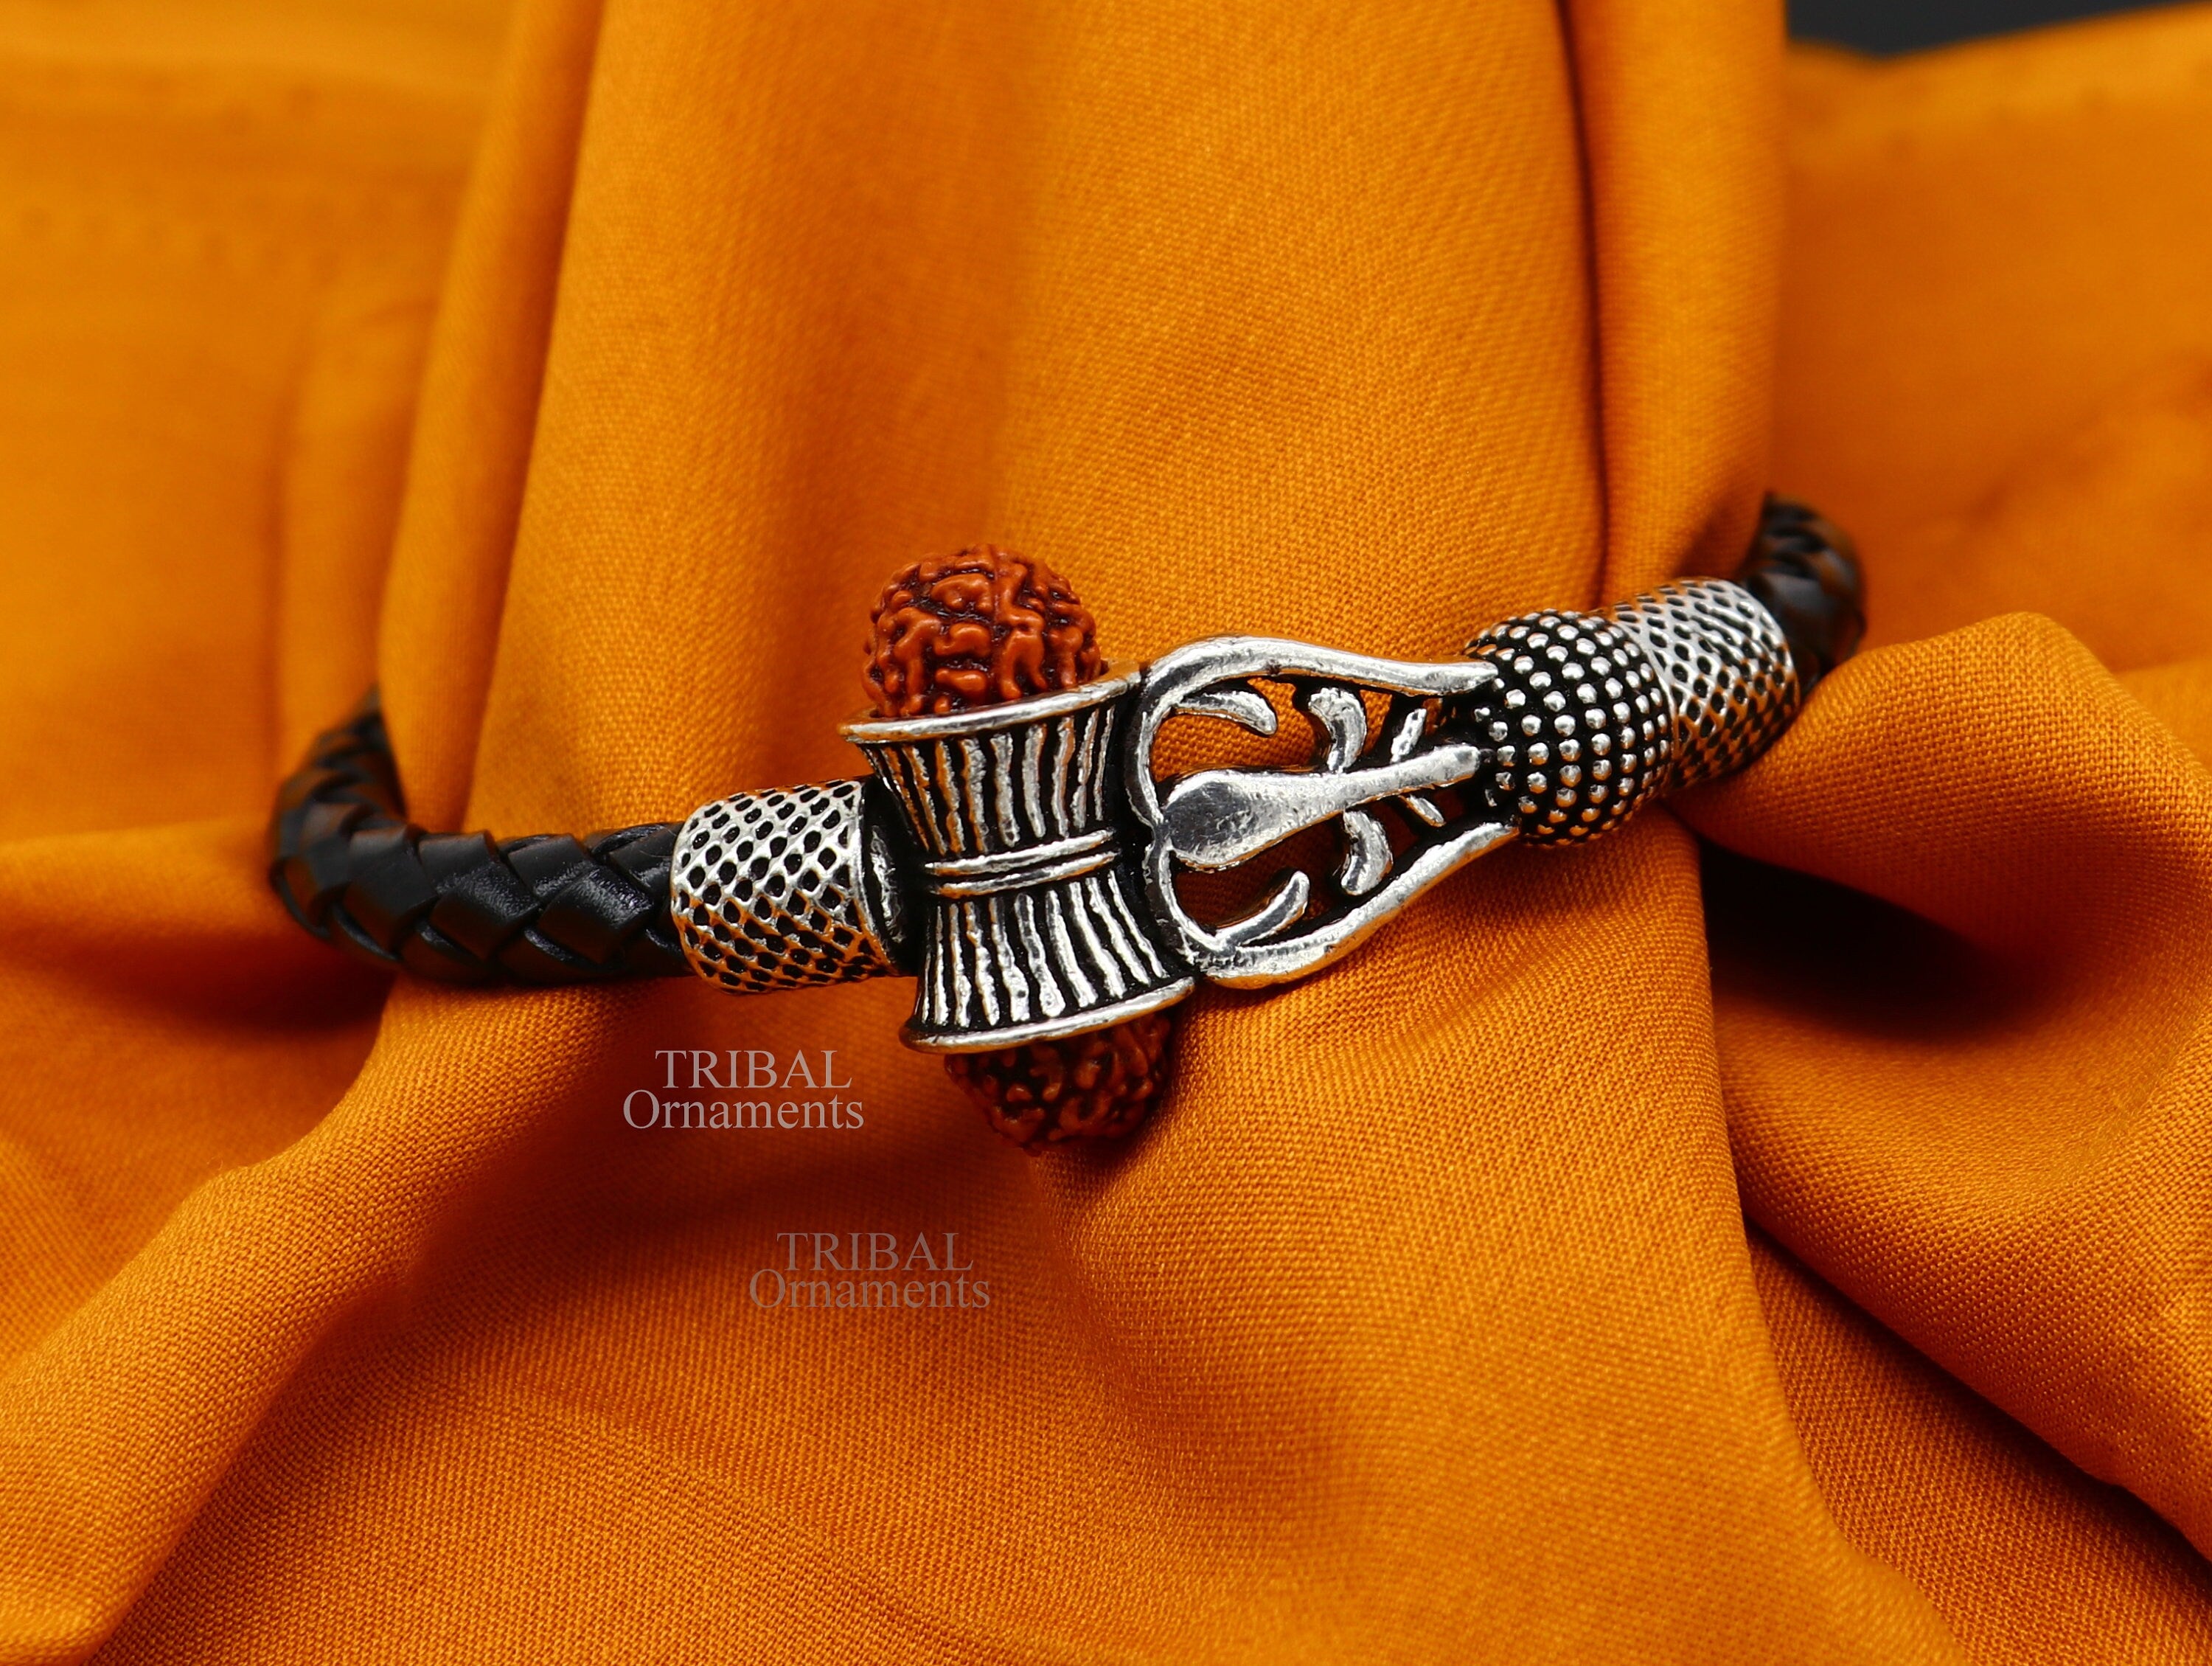 High Quality 3 Line Rudraksh Bracelet for Men RB-016 – Rudraksh Art  Jewellery